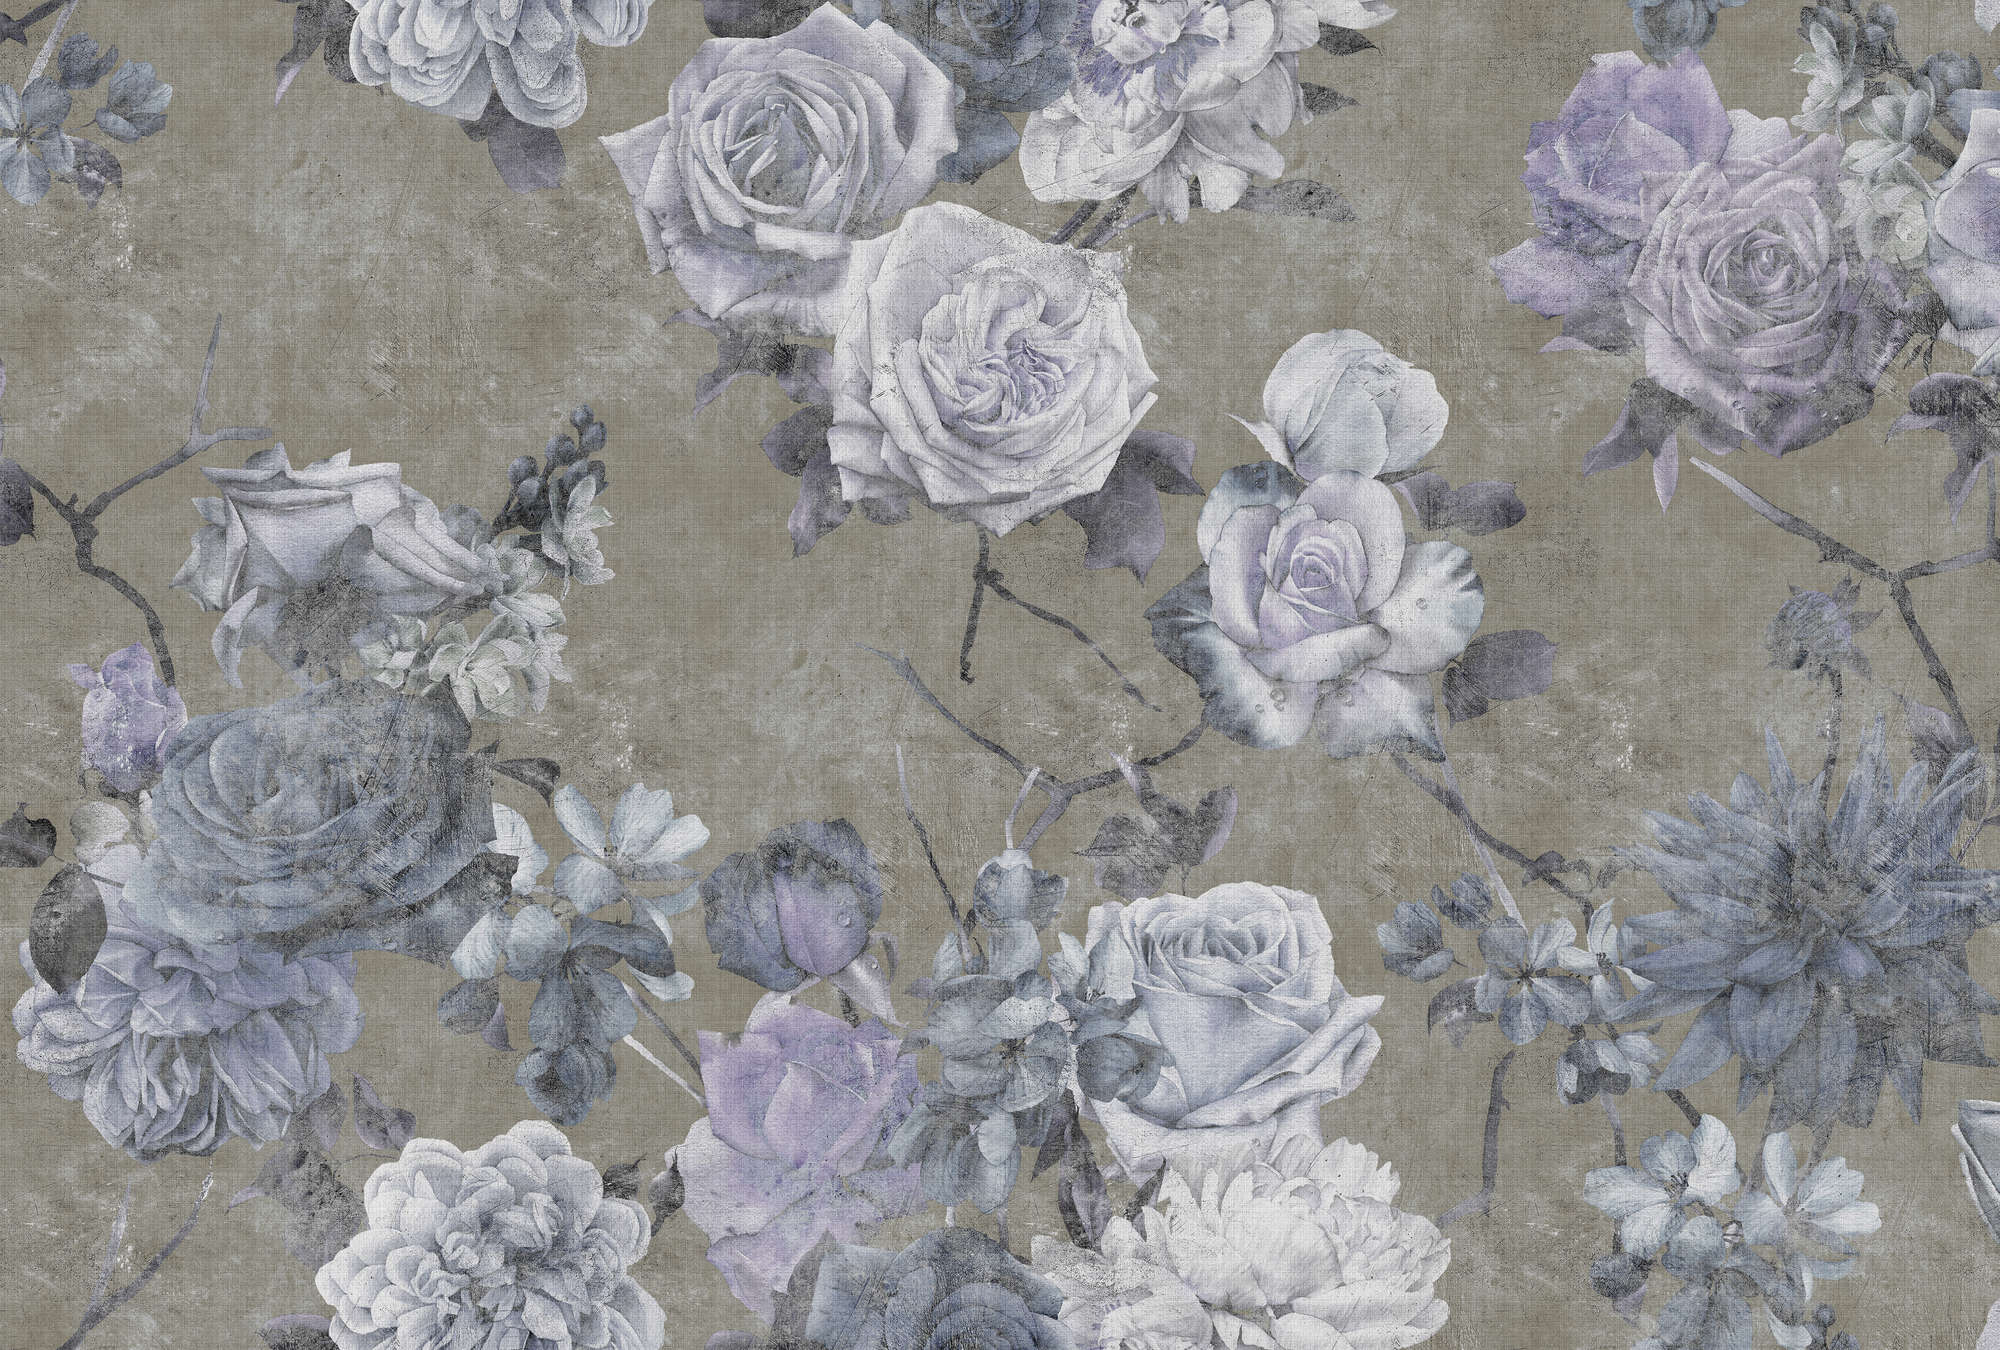             Sleeping Beauty 1 - Papier peint panoramique en lin naturel À structure Fleurs de roses en look usé - bleu, taupe | À structure intissé
        